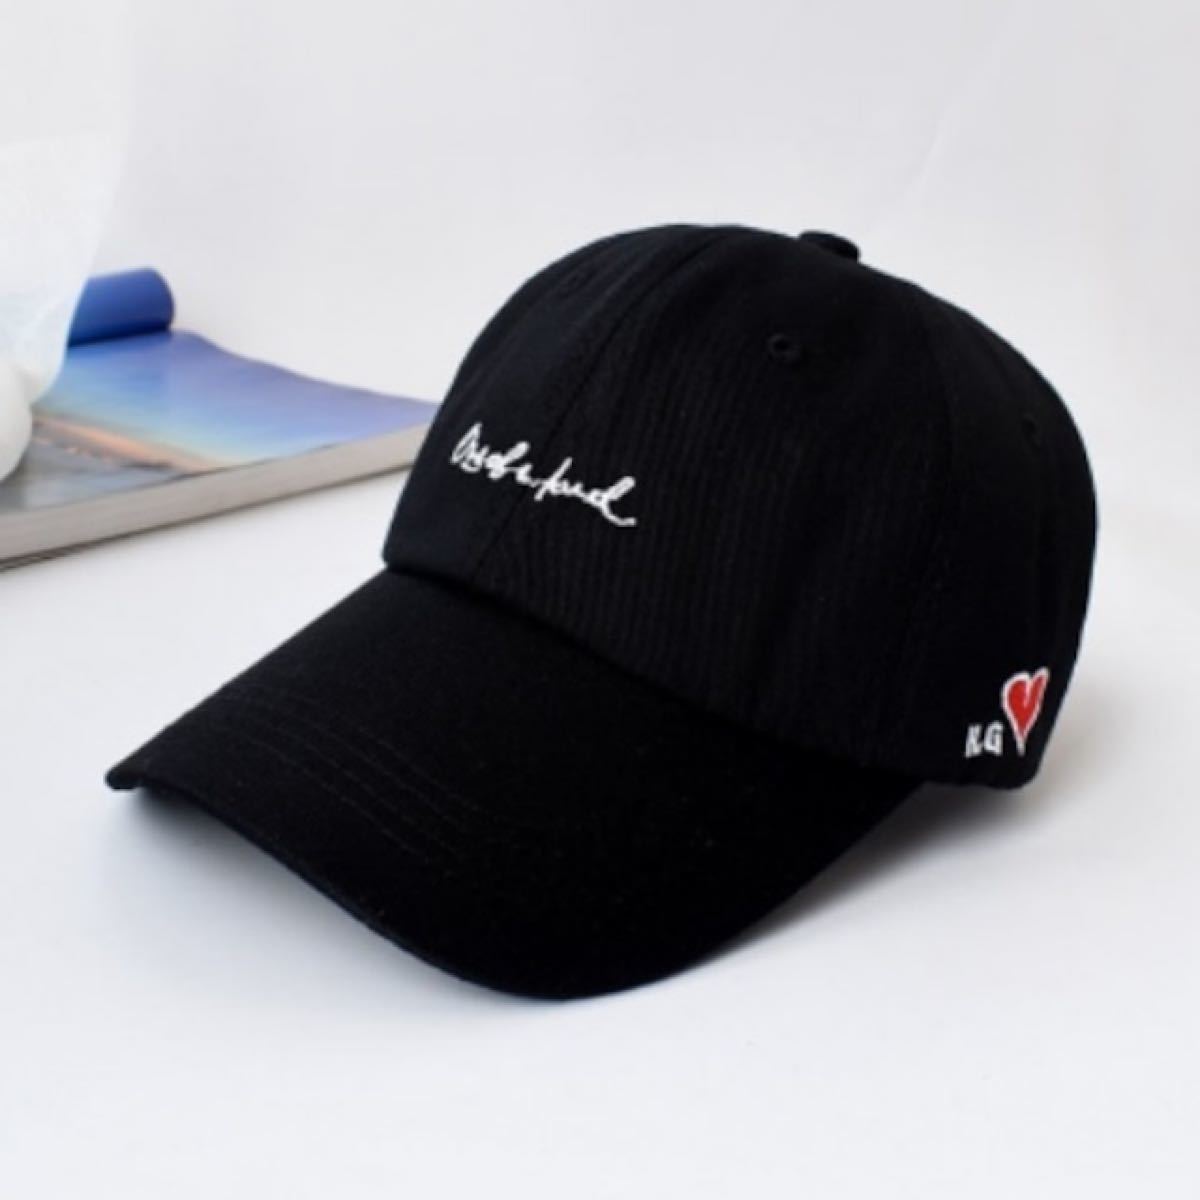 帽子 黒 飾り ユニセックス キャップ ブラック ストリート 韓国